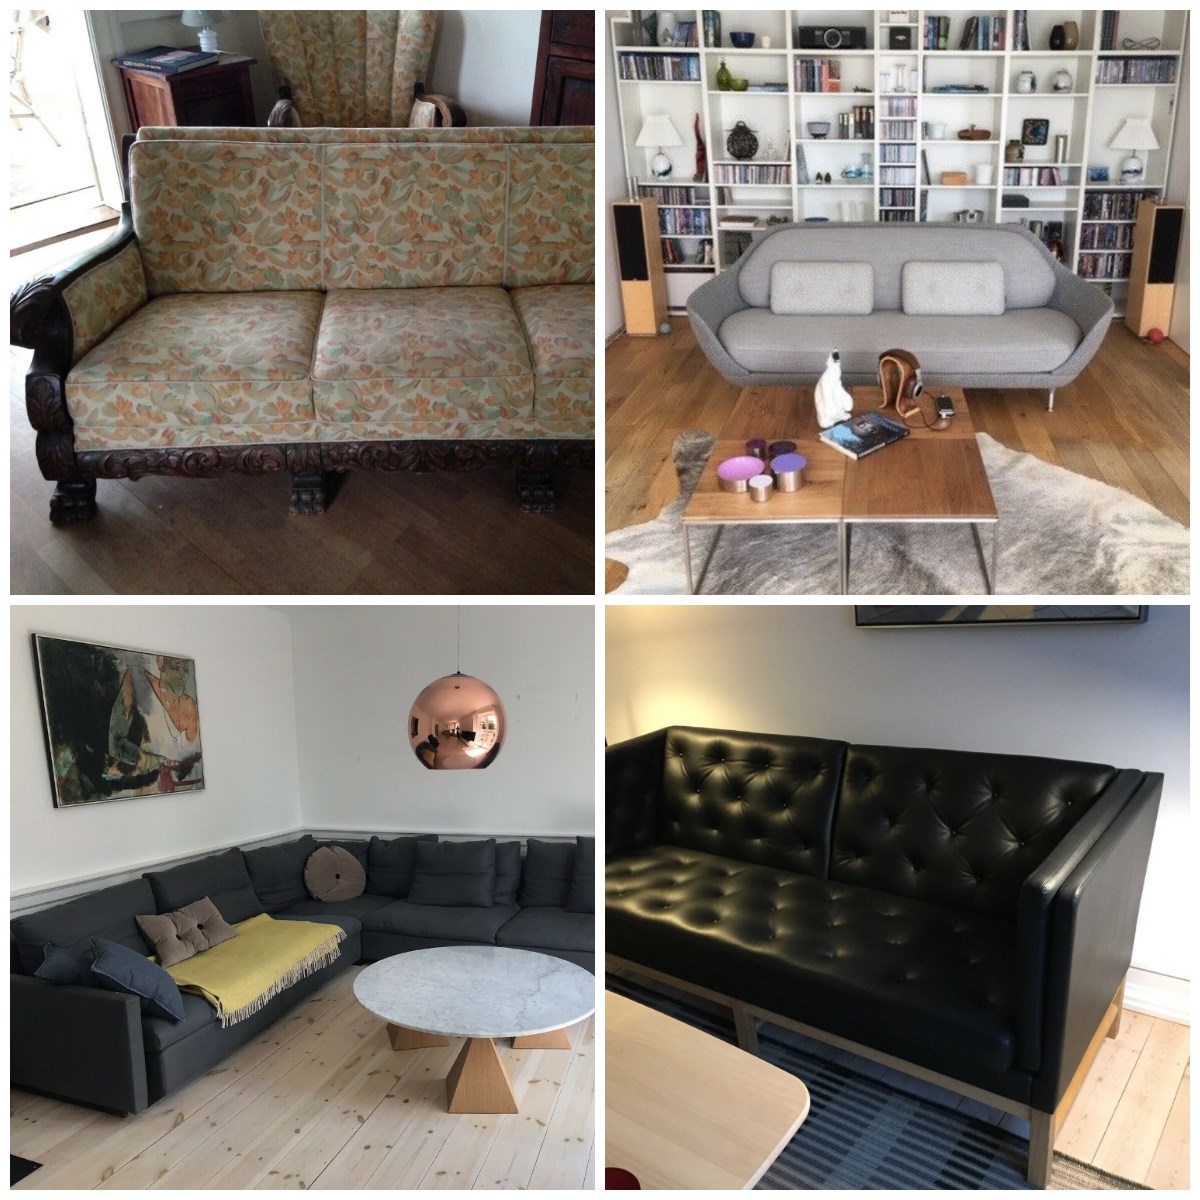 Her er fire sofaer, som alle er til salg lige nu på DBA. Den gul-blomstrede har Lene fra Espergærde til salg for 12.000 kroner. Den hvide kan du købe for 25.000 kroner af Erik fra København S. De mørkegrå har Mette fra Vanløse til salg for 32.000 kroner, mens Bjarne fra Vanløse vil have 30.000 for sin lædersofa